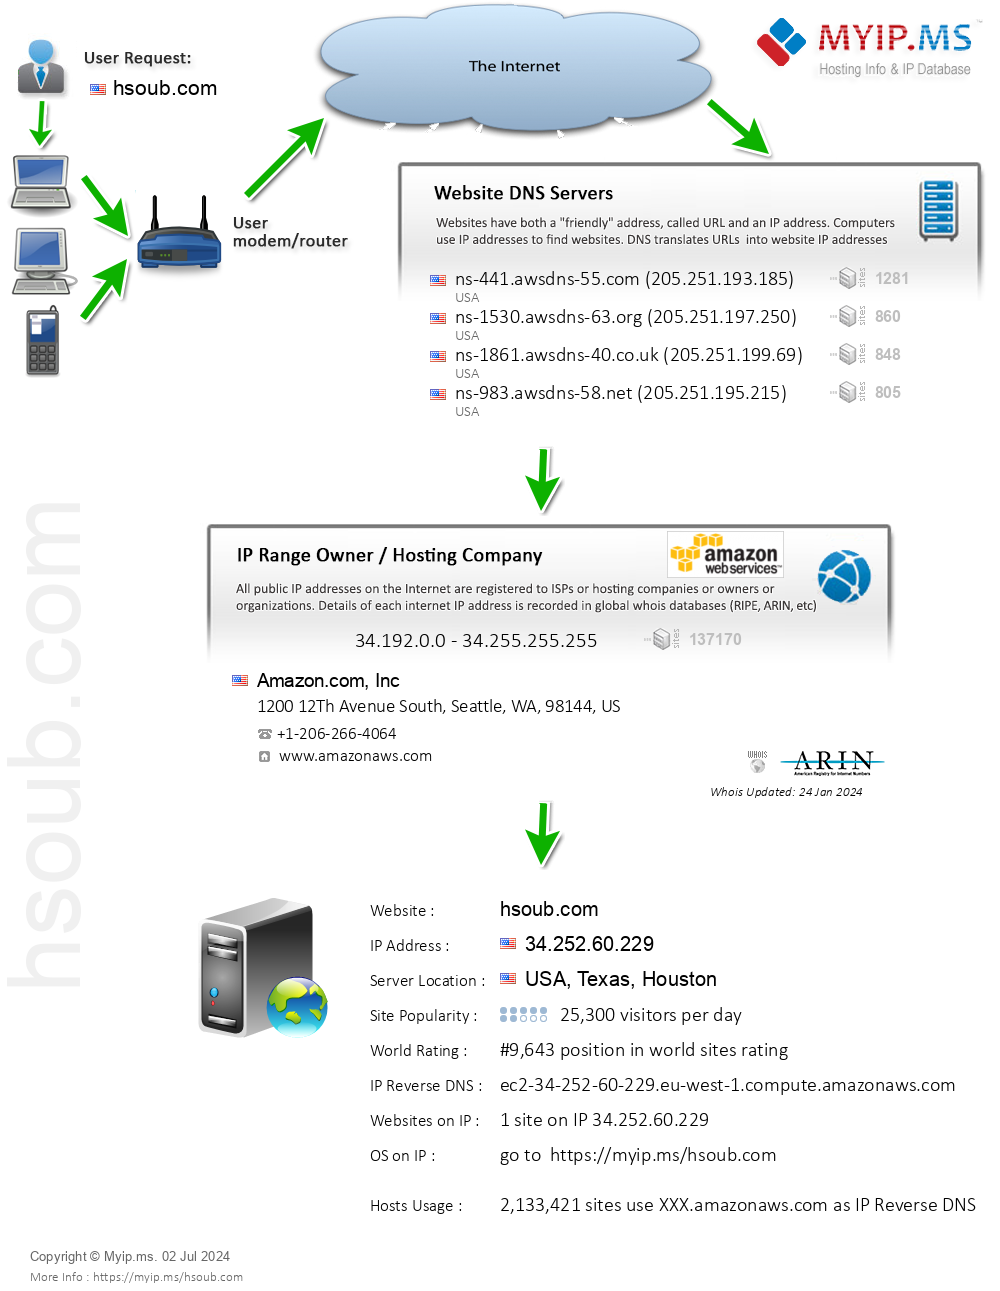 Hsoub.com - Website Hosting Visual IP Diagram